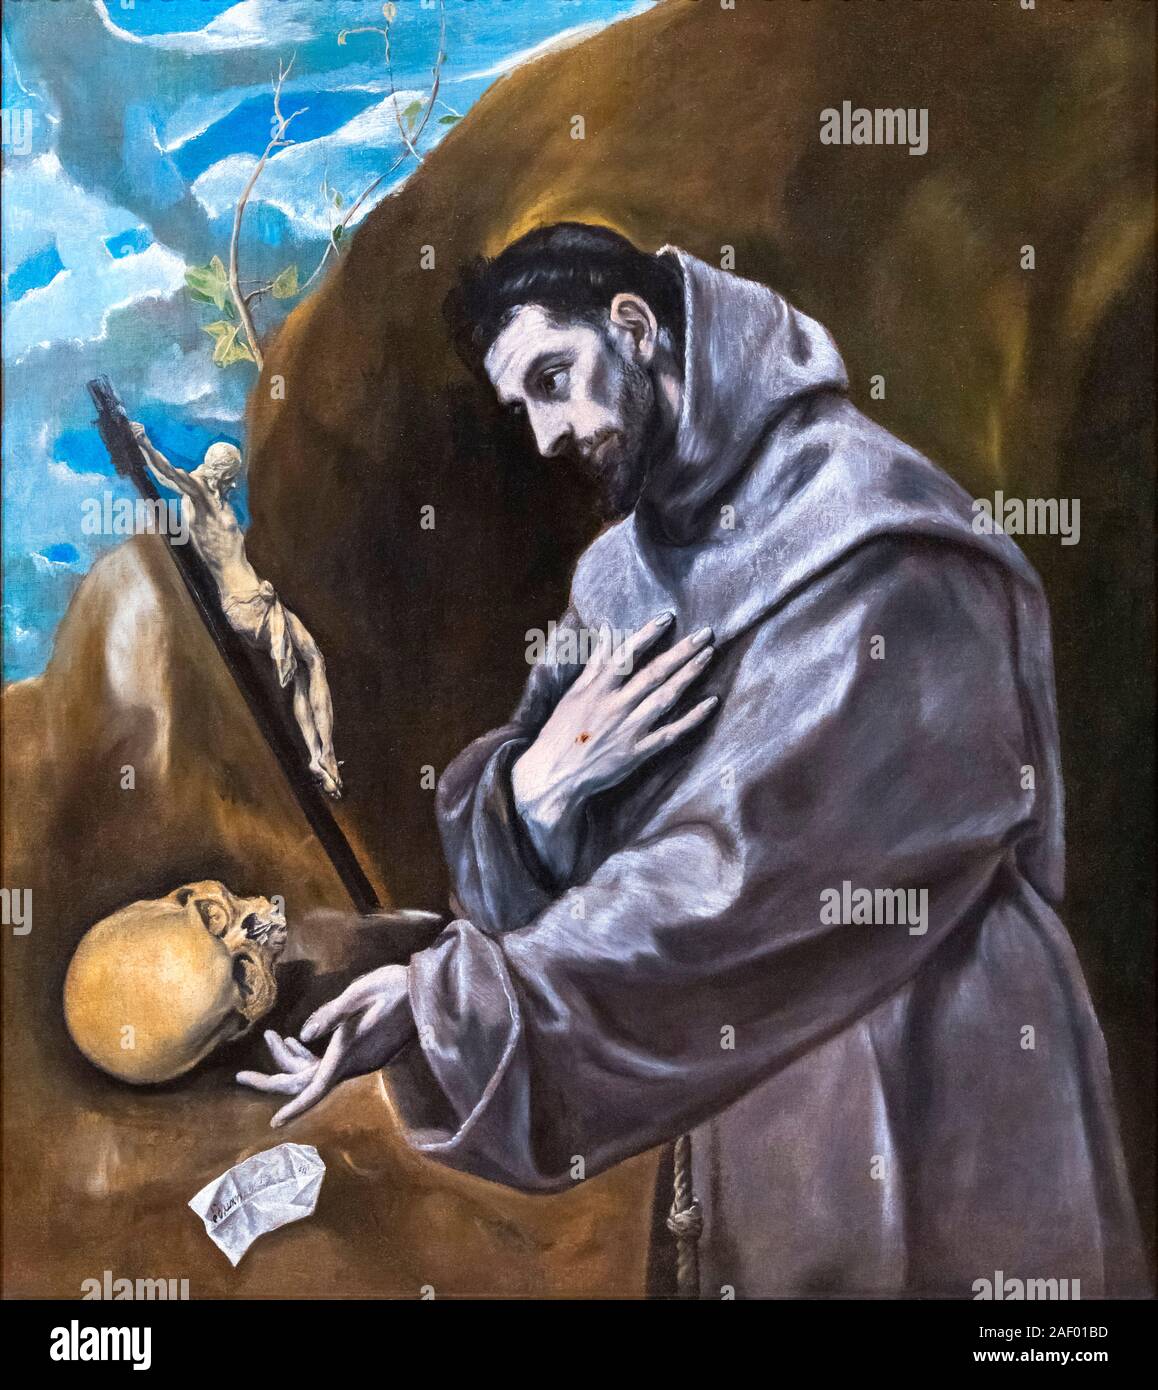 San Francisco en oración por El Greco (Doménikos Theotokópoulos, 1541-1614), óleo sobre lienzo, c.1580-85 Foto de stock